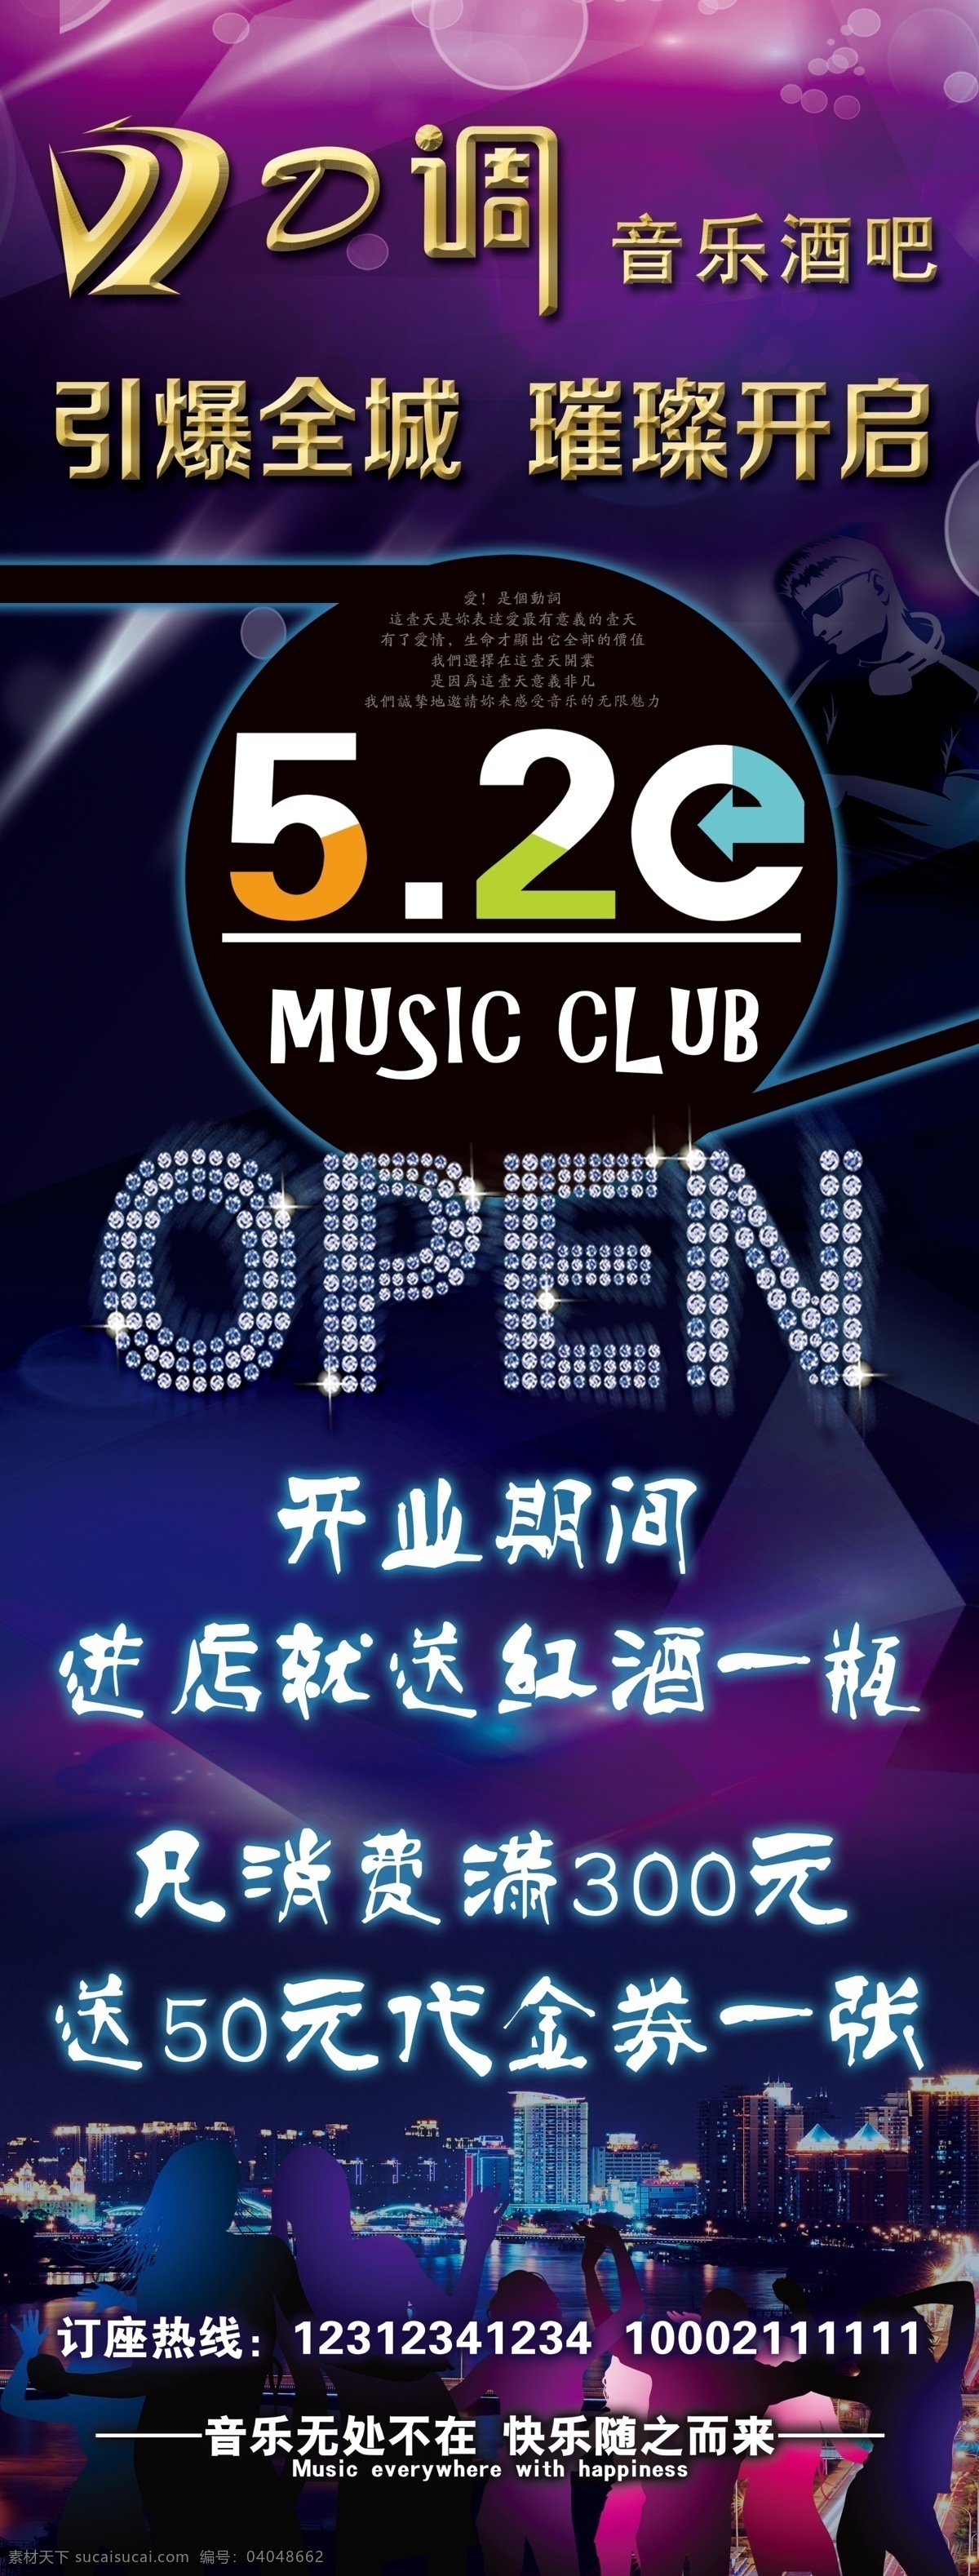 音乐酒吧 520 open 开业 活动 music club 酒吧展架 引爆全场 璀璨开启